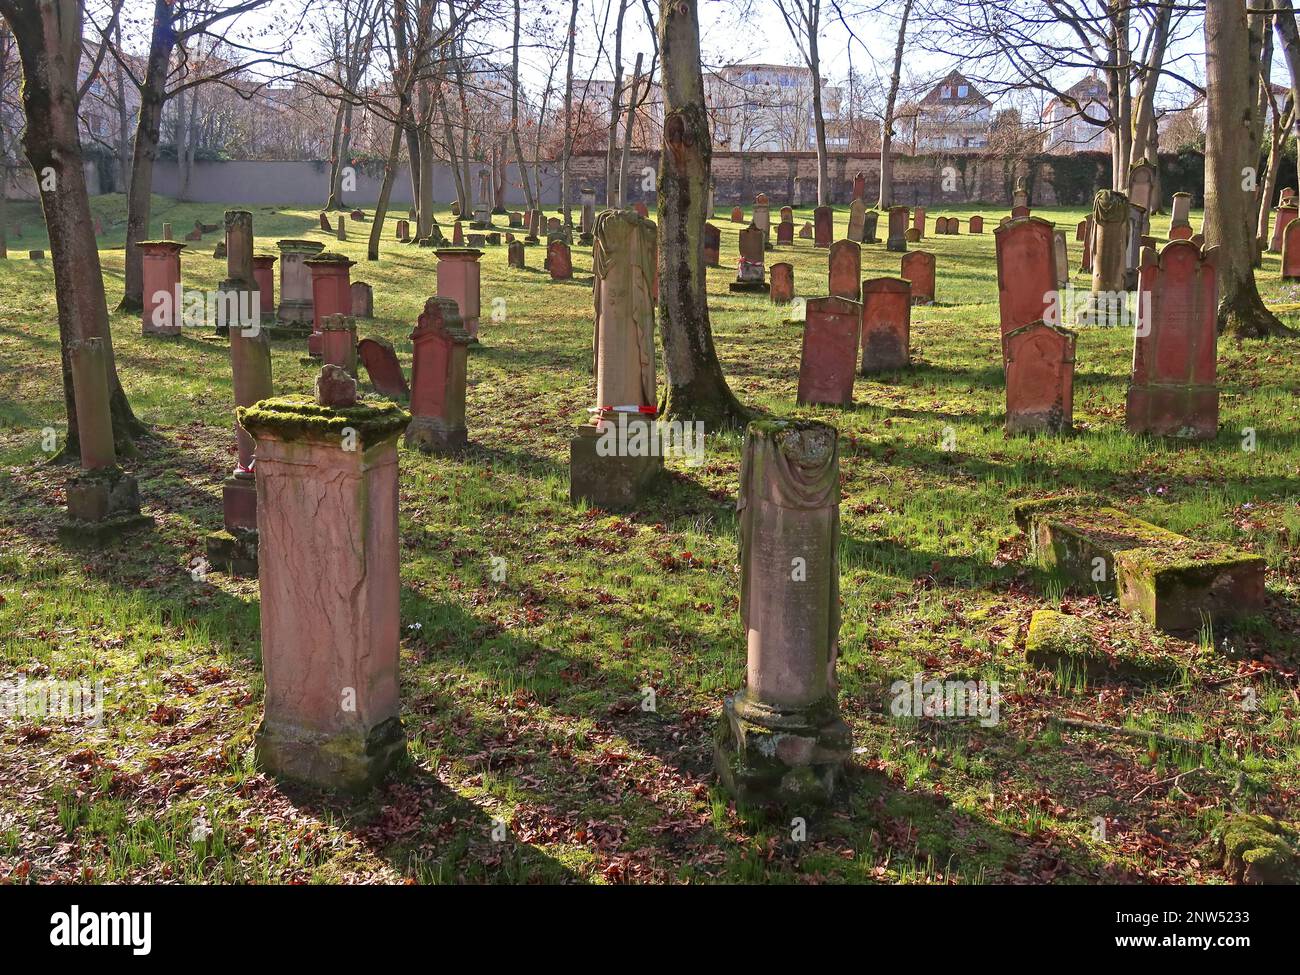 SHUM Alter jüdischer Friedhof, Judensand, Mombacher Straße. 61, 55122 Mainz, Rheinland-Pfalz, Deutschland Stockfoto